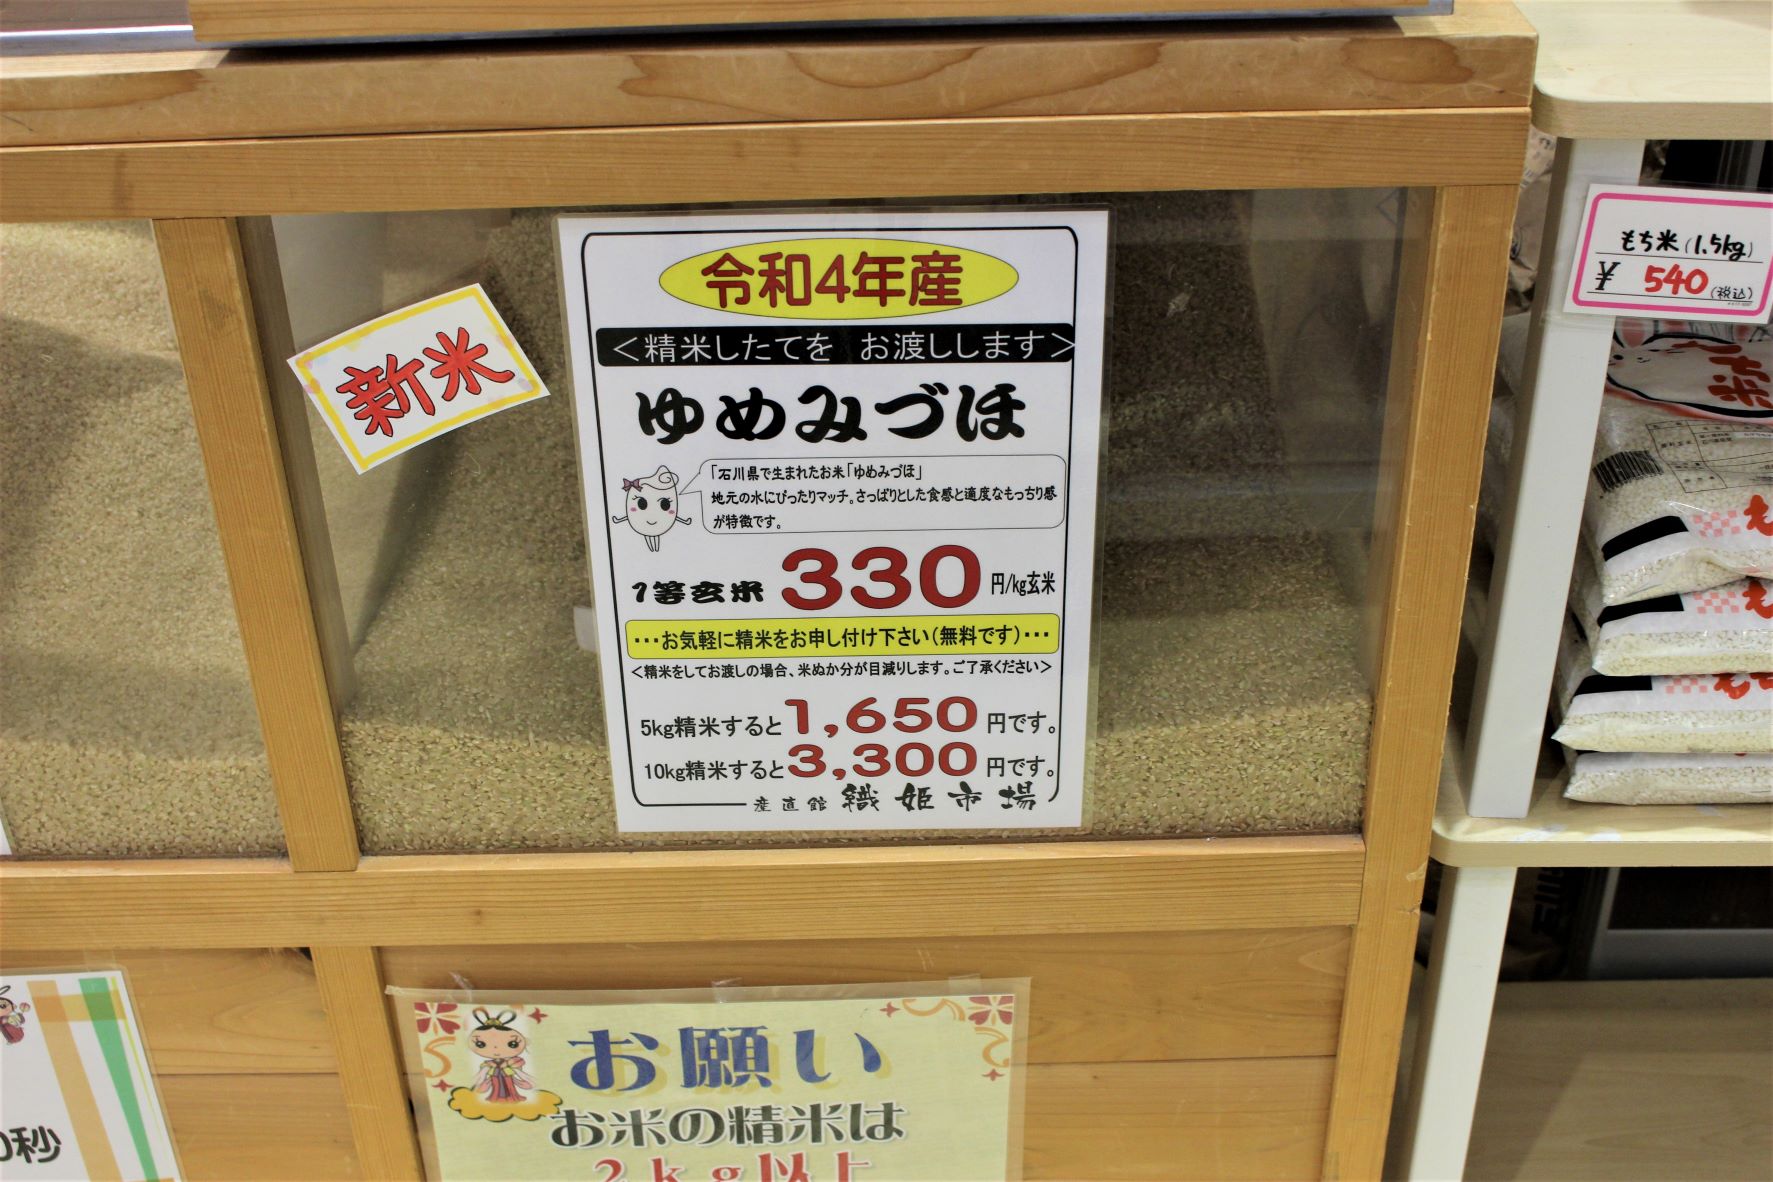 珍しい 石川県能登米ゆめみづほ新米白米10kg 世界農業遺産認定の地